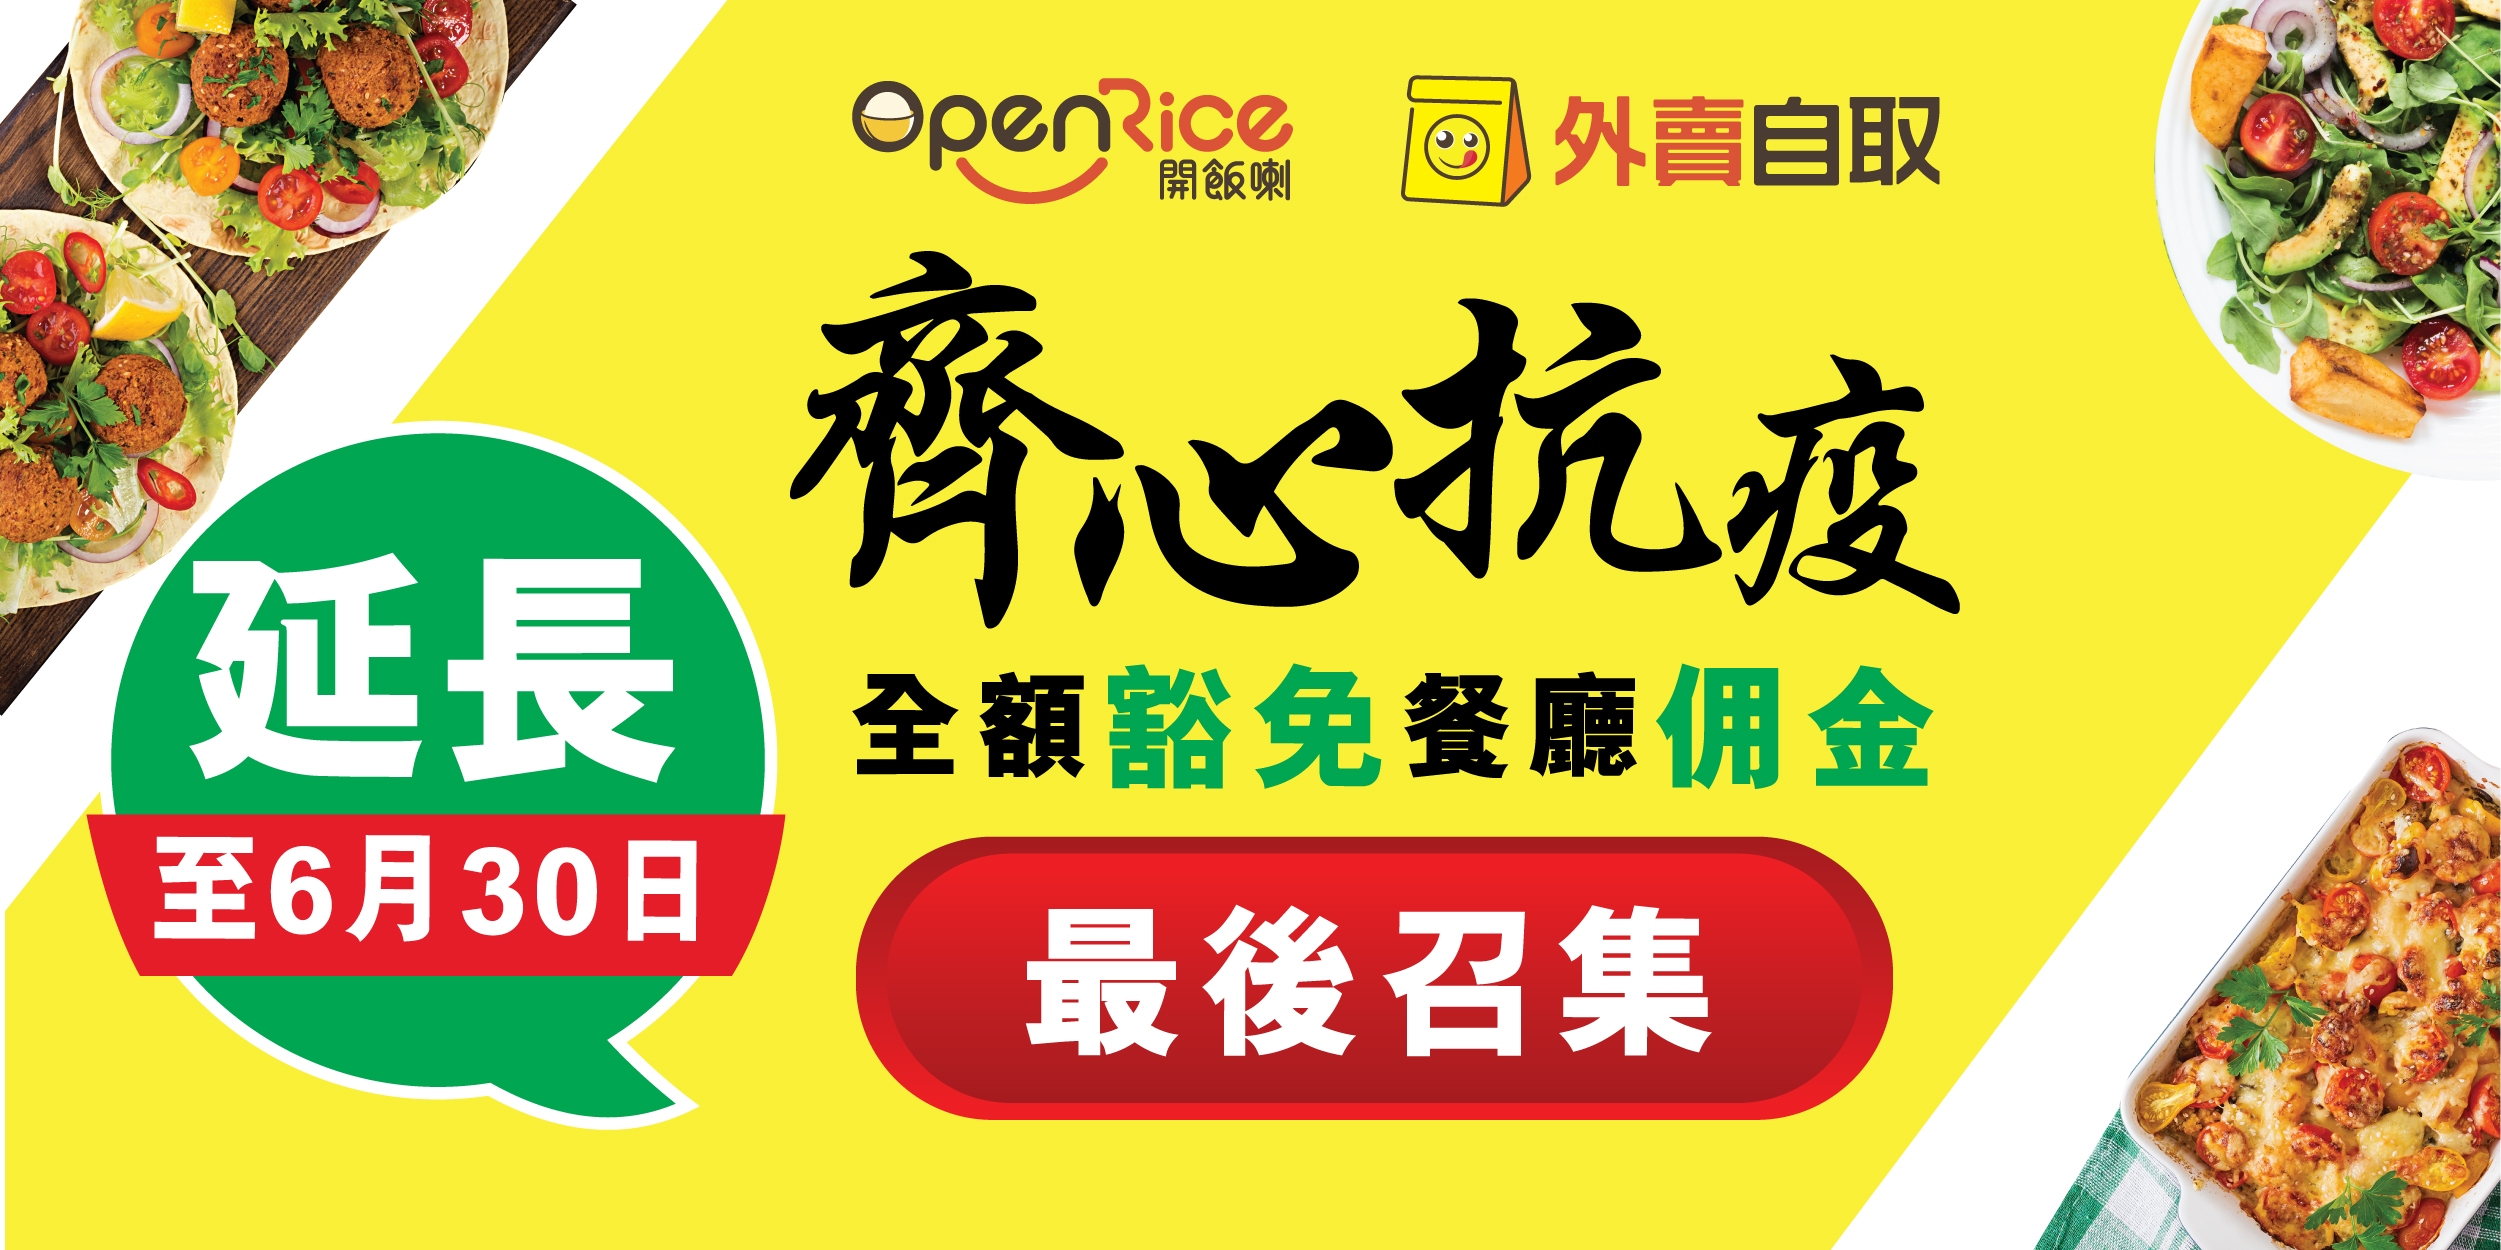 圖片: OpenRice於2020年2月至6月期間，全額豁免經OpenRice外賣自取服務進行交易的餐廳佣金，以支援受疫情重創的餐飲業。